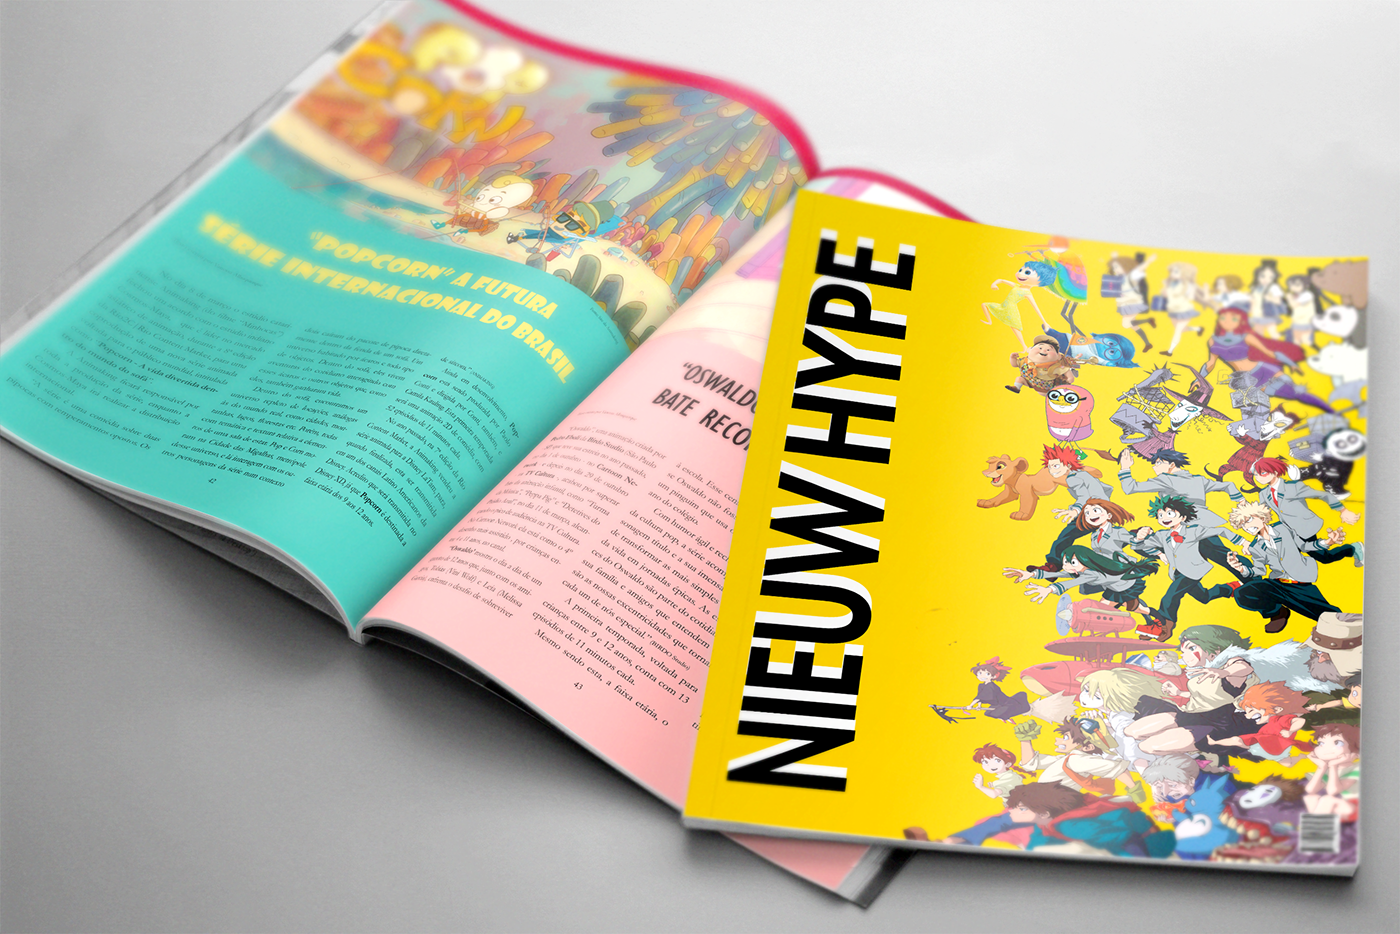 animation  magazine revista diagramação design gráfico graphic design  edição Livro book edition